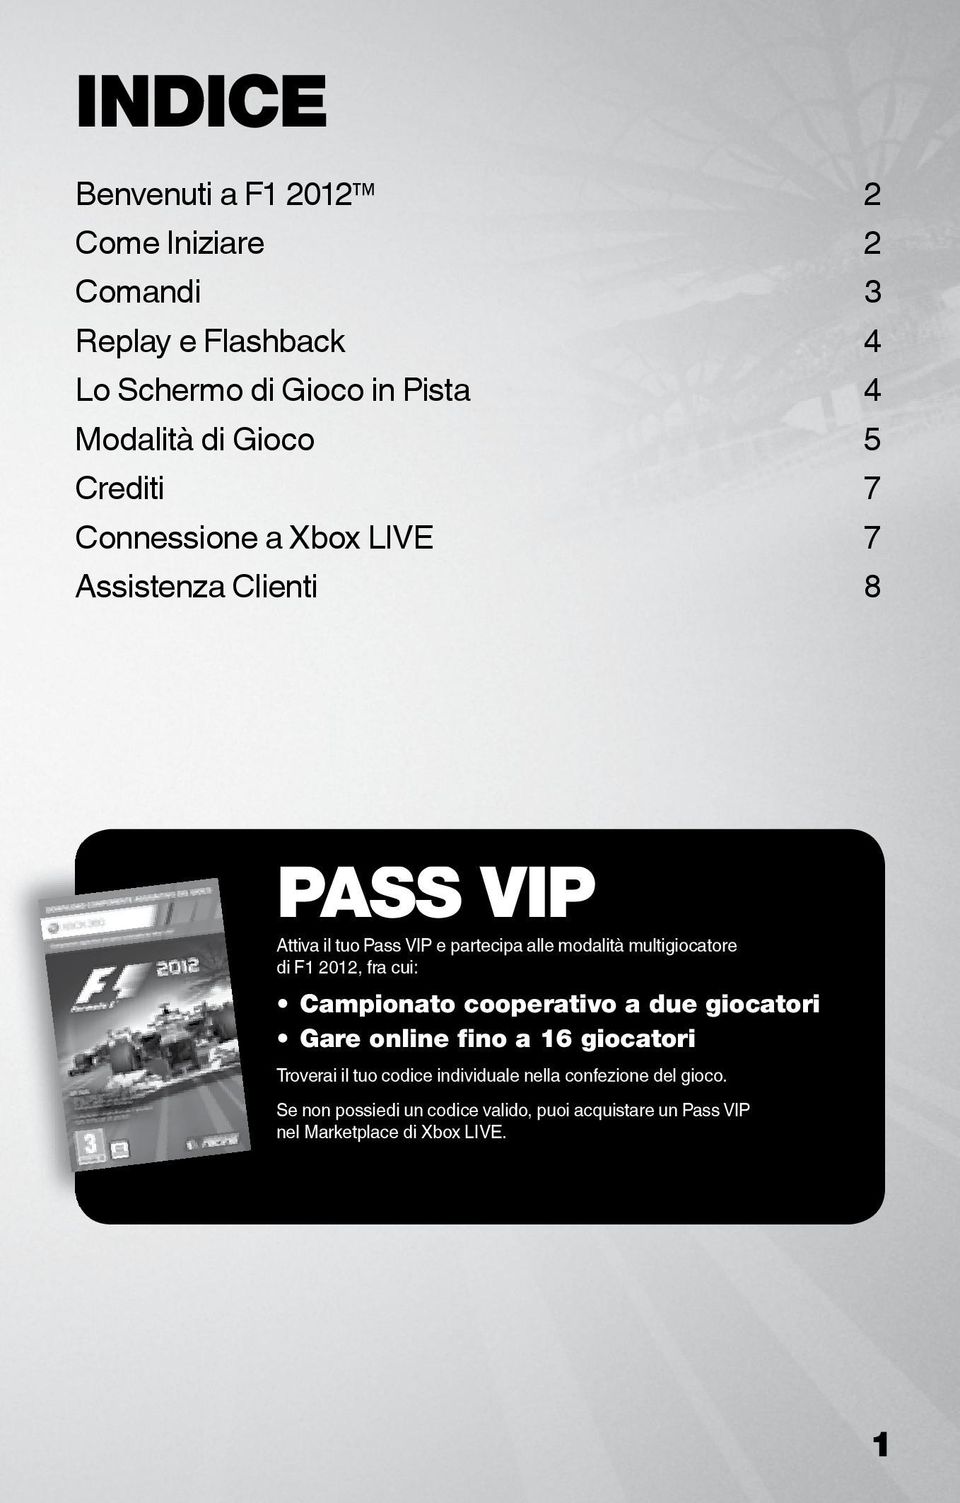 multigiocatore di F1 2012, fra cui: Campionato cooperativo a due giocatori Gare online fino a 16 giocatori Troverai il tuo